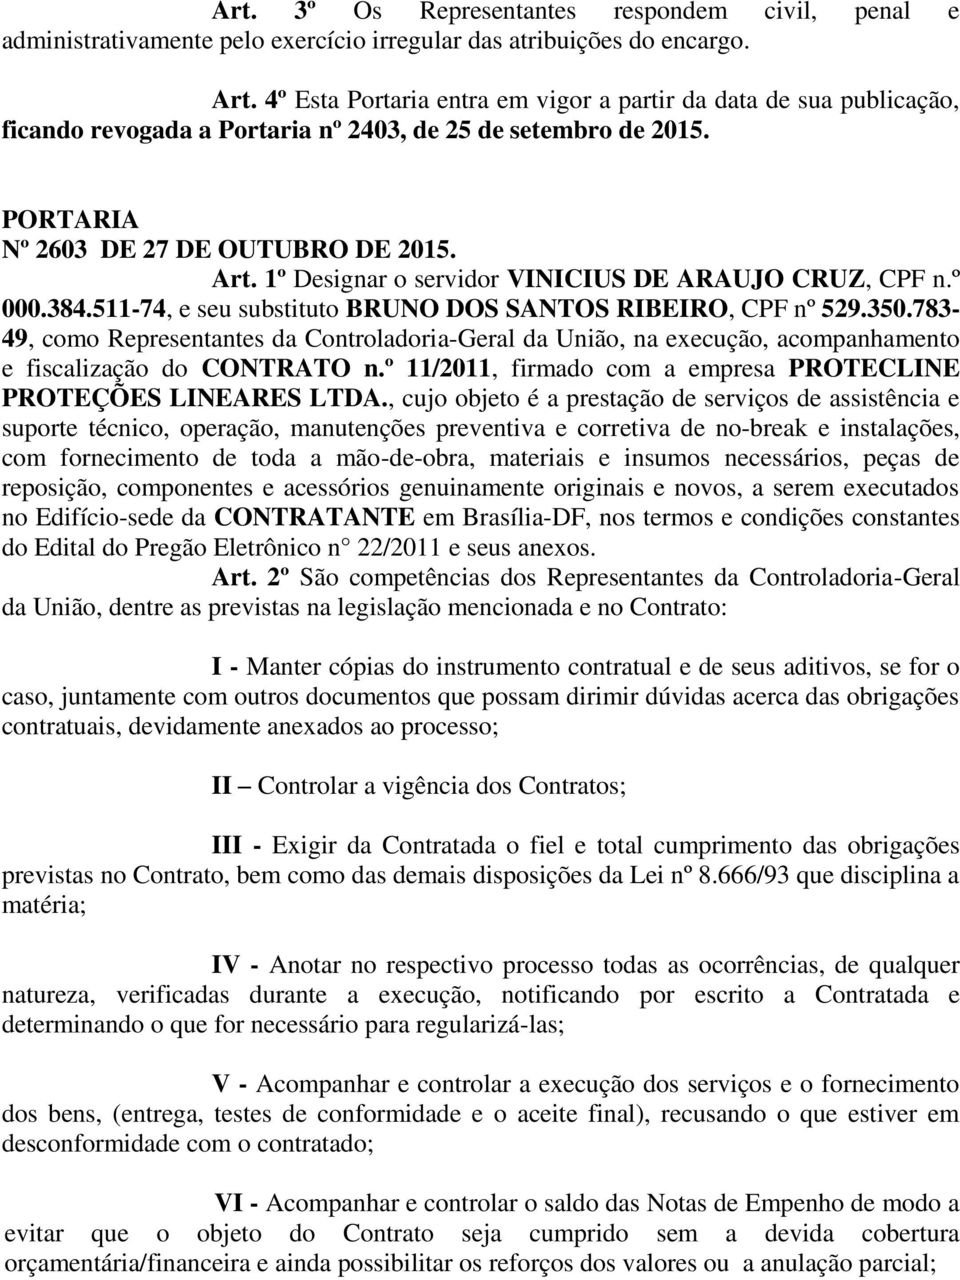 1º Designar o servidor VINICIUS DE ARAUJO CRUZ, CPF n.º 000.384.511-74, e seu substituto BRUNO DOS SANTOS RIBEIRO, CPF nº 529.350.